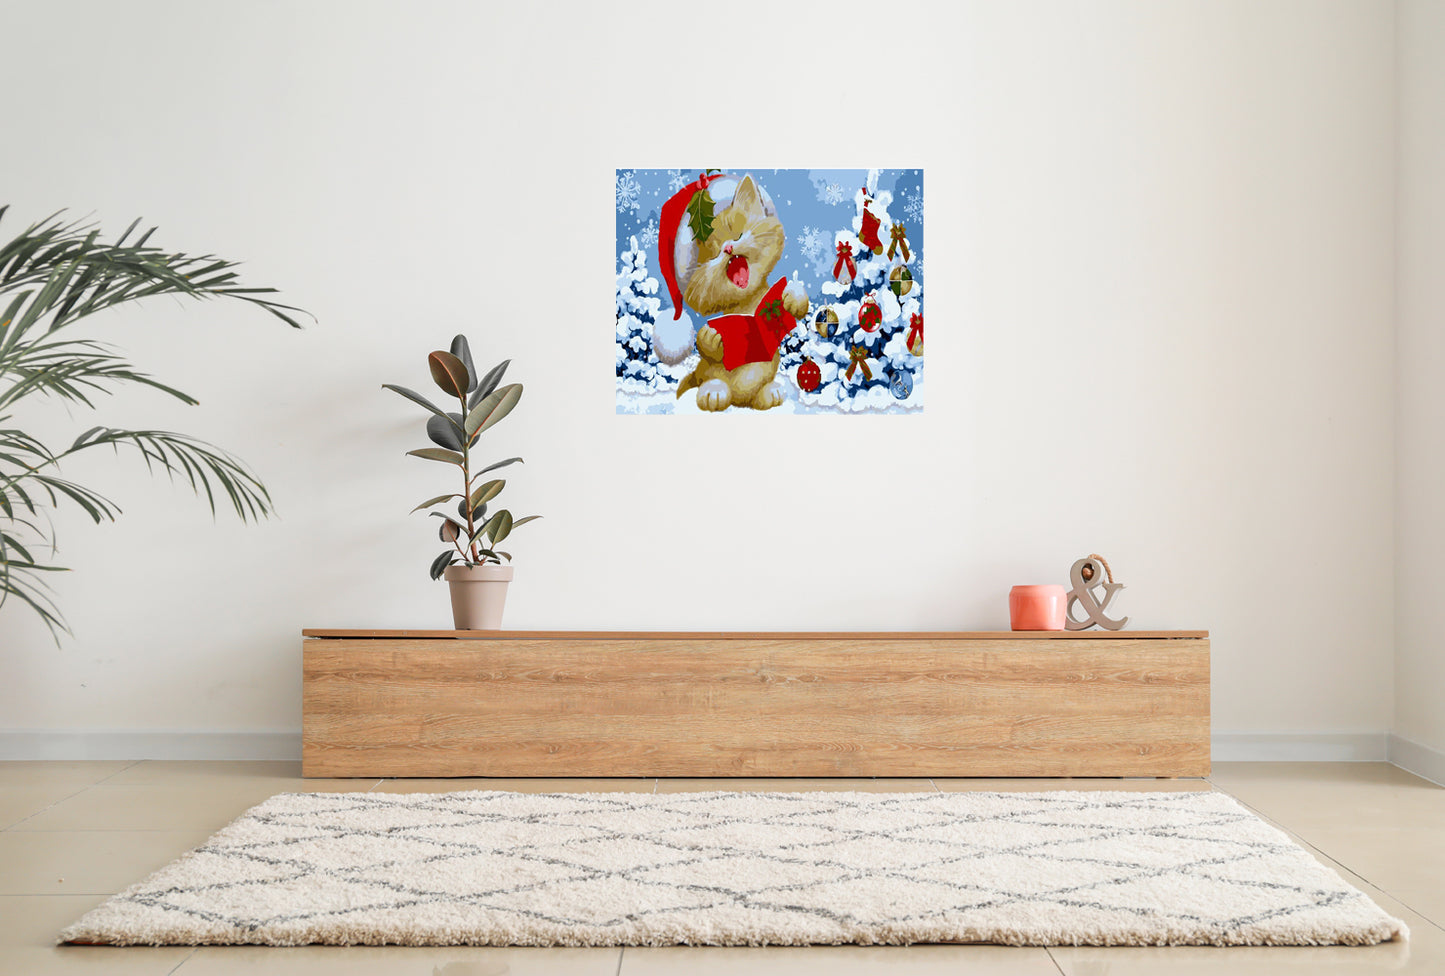 Malen nach Zahlen Erwachsene singende Weihnachtskatze 40x50 cm Paint by Numbers ohne Rahmen DIY Öl Acryl Leinwand Bild Deko Weihnachten Katze Winter